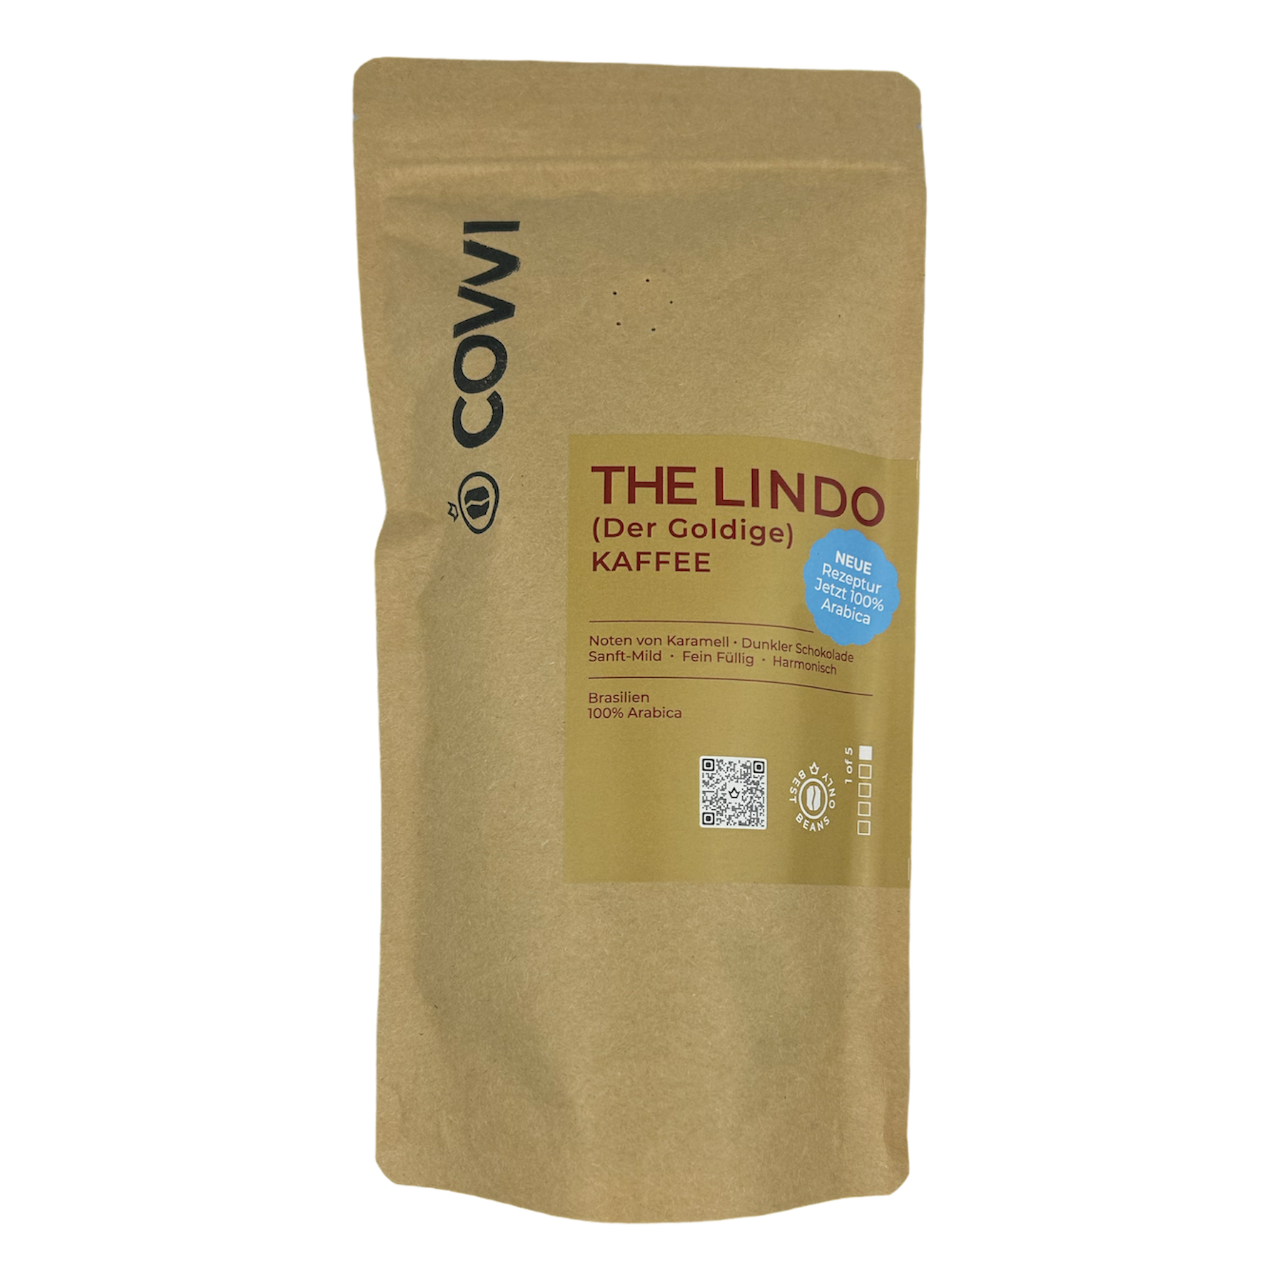 THE LINDO KAFFEE